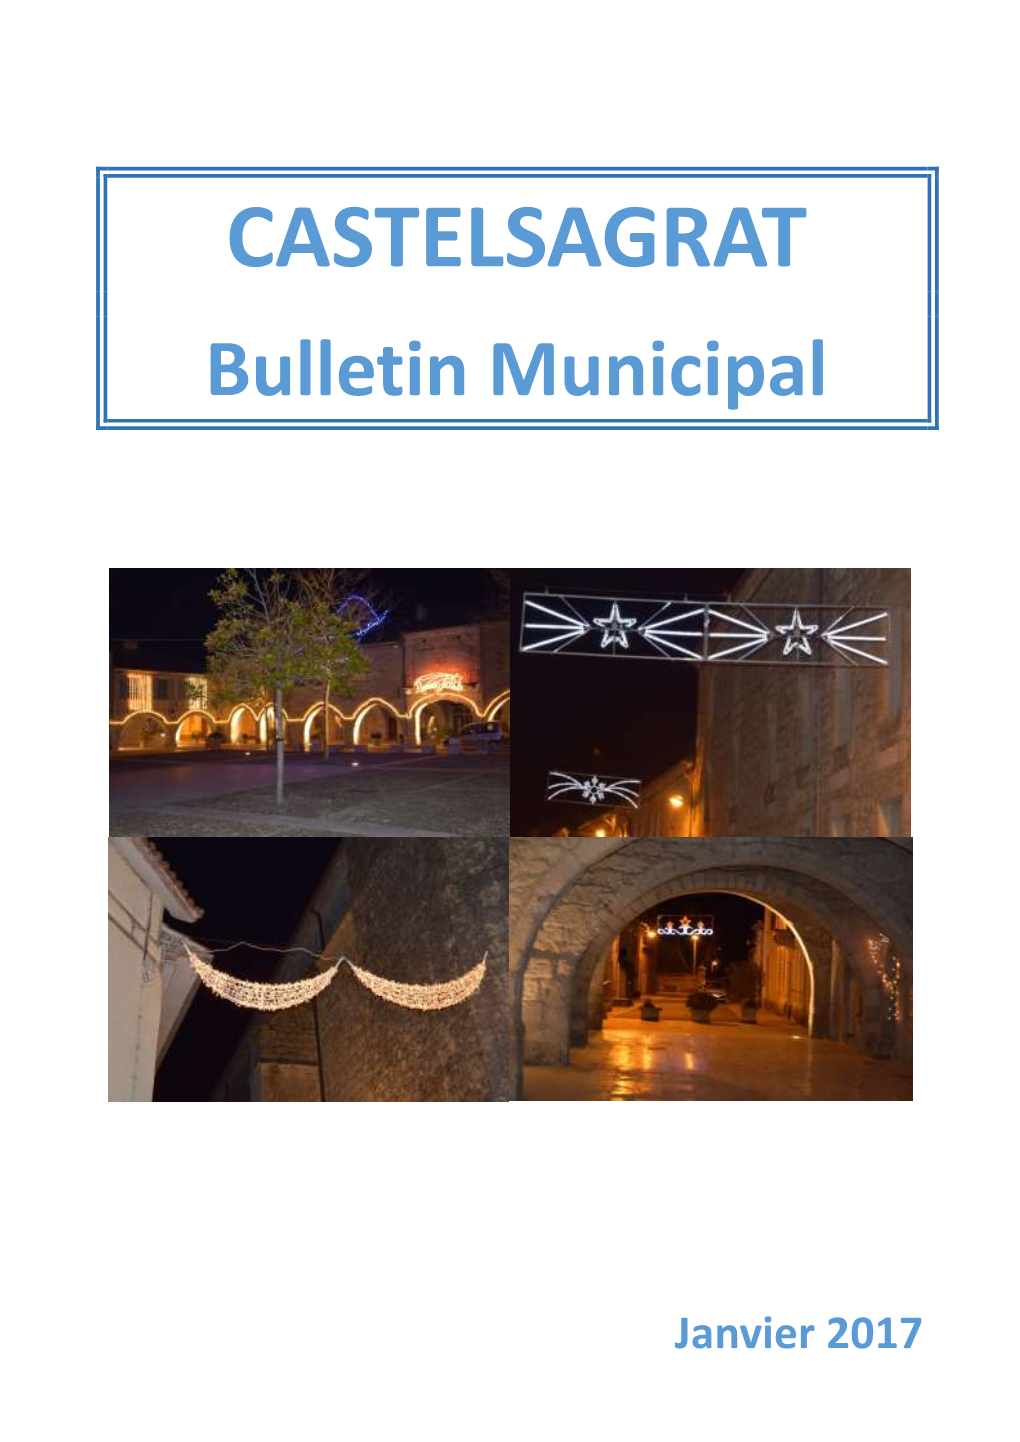 Castelsagrat